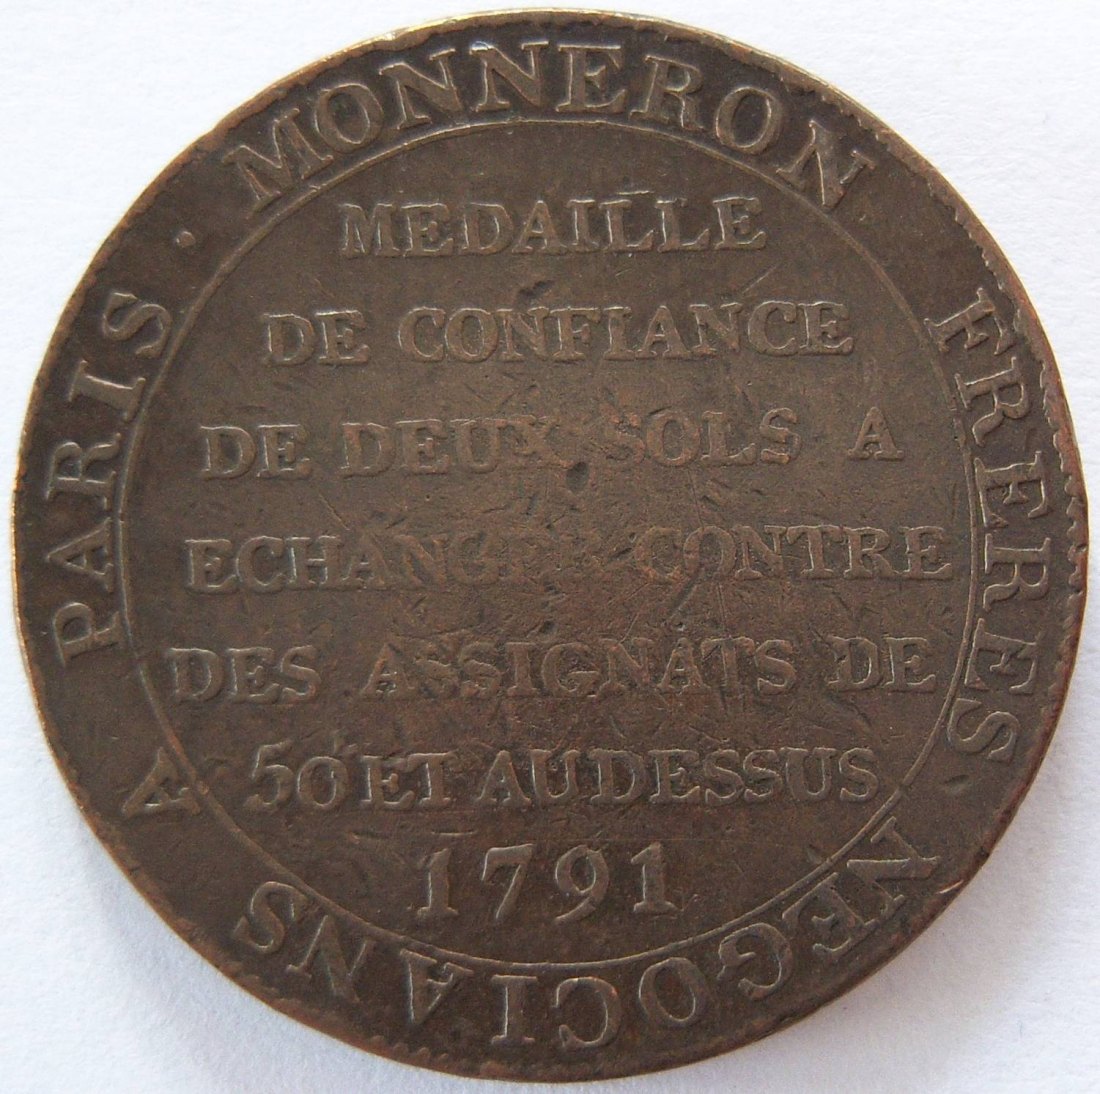  Frankreich 2 Sols 1791 Monneron Medaille de Confiance de deux Sols   